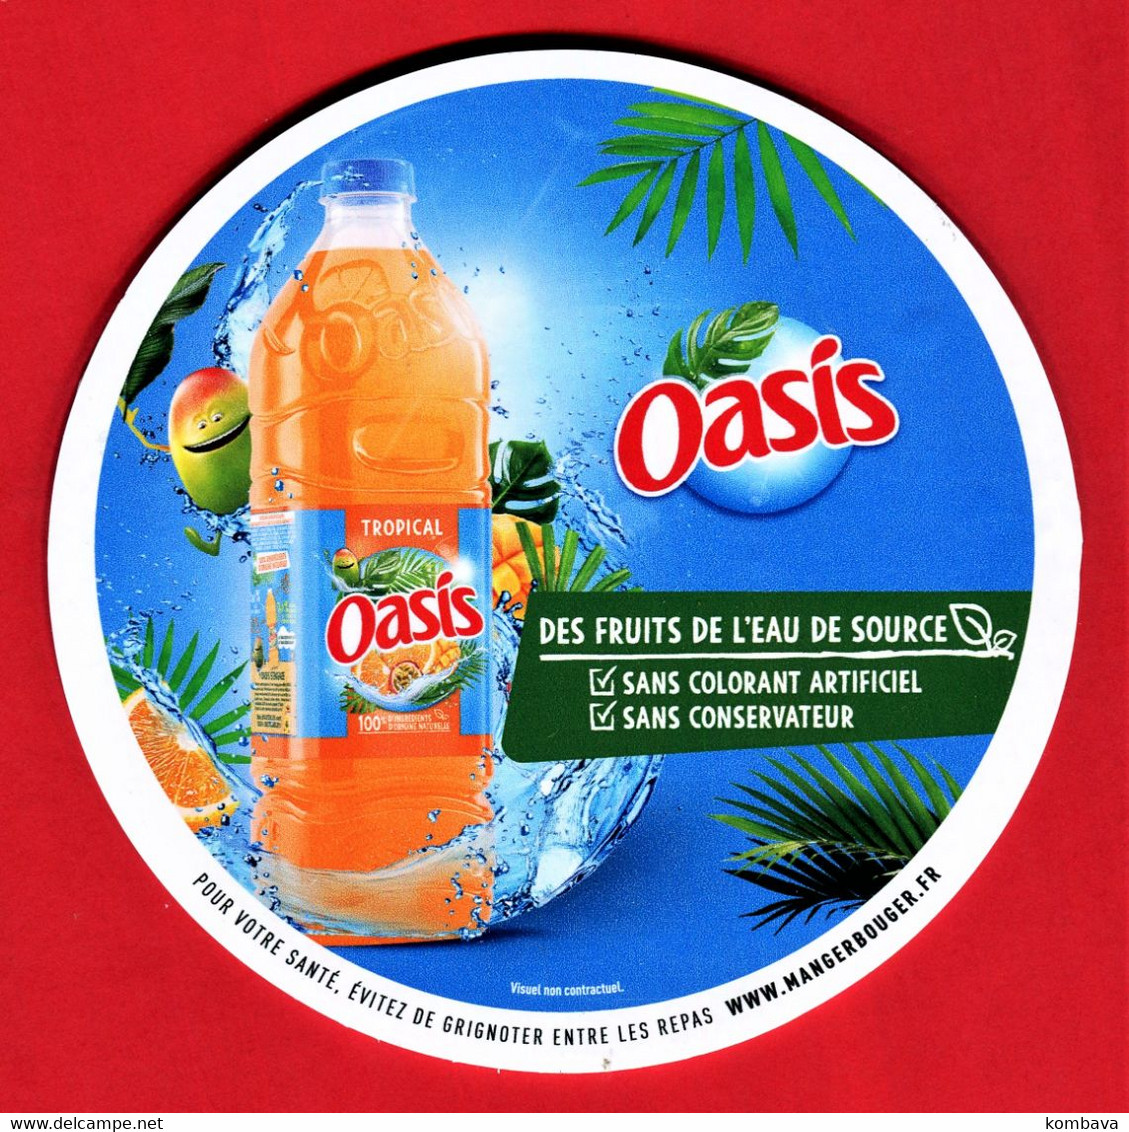 RARE - LA REUNION - Balise De Gondole - Publicité De Boisson / OASIS (Réunion) Eau Fruitée (obj Div Balise Oasis) - Posters